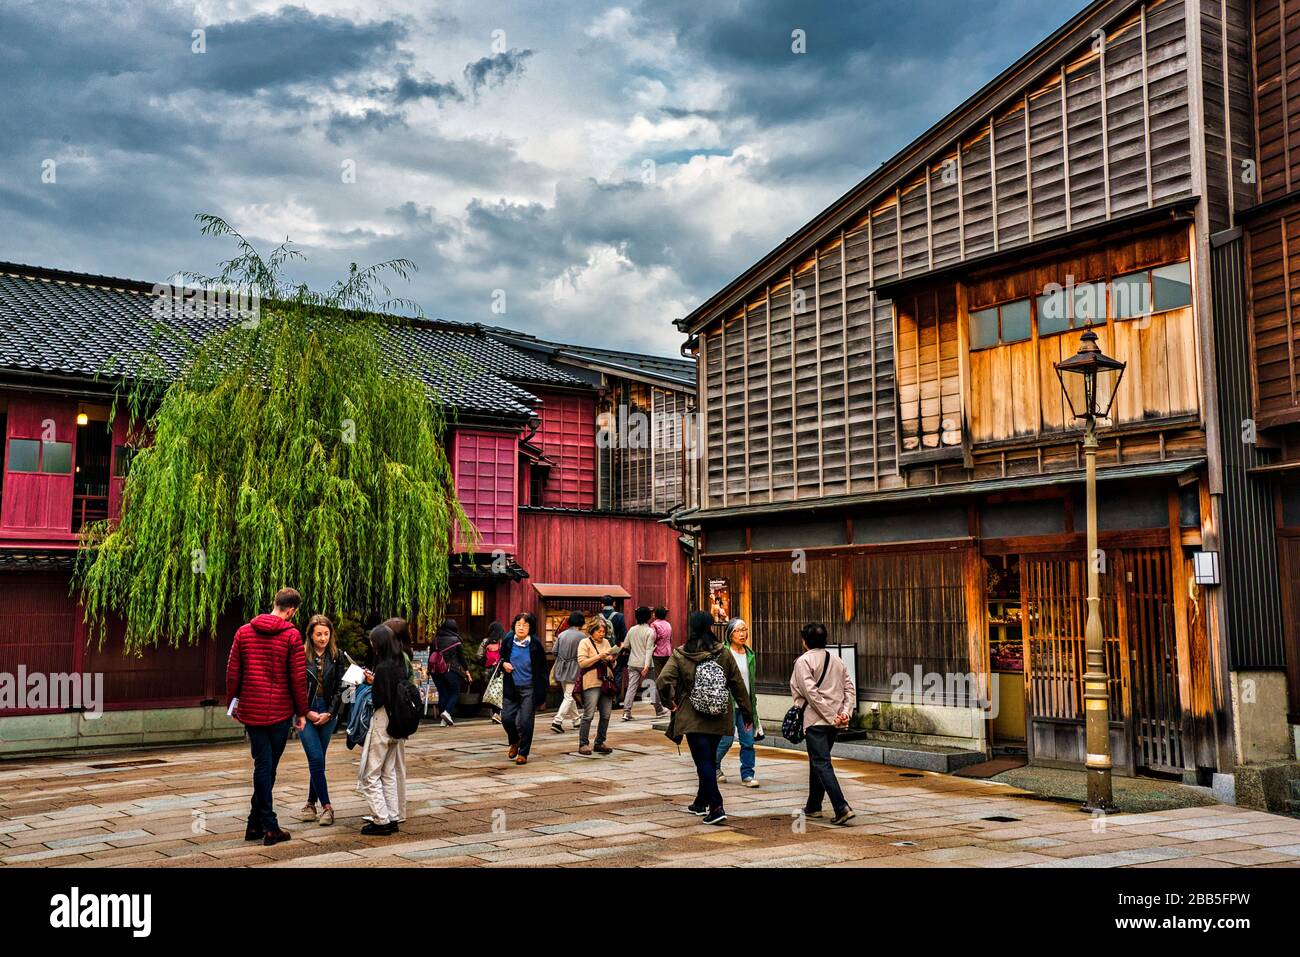 Higashi Chaya Quarter in Kanazawz, Japan. Stockfoto